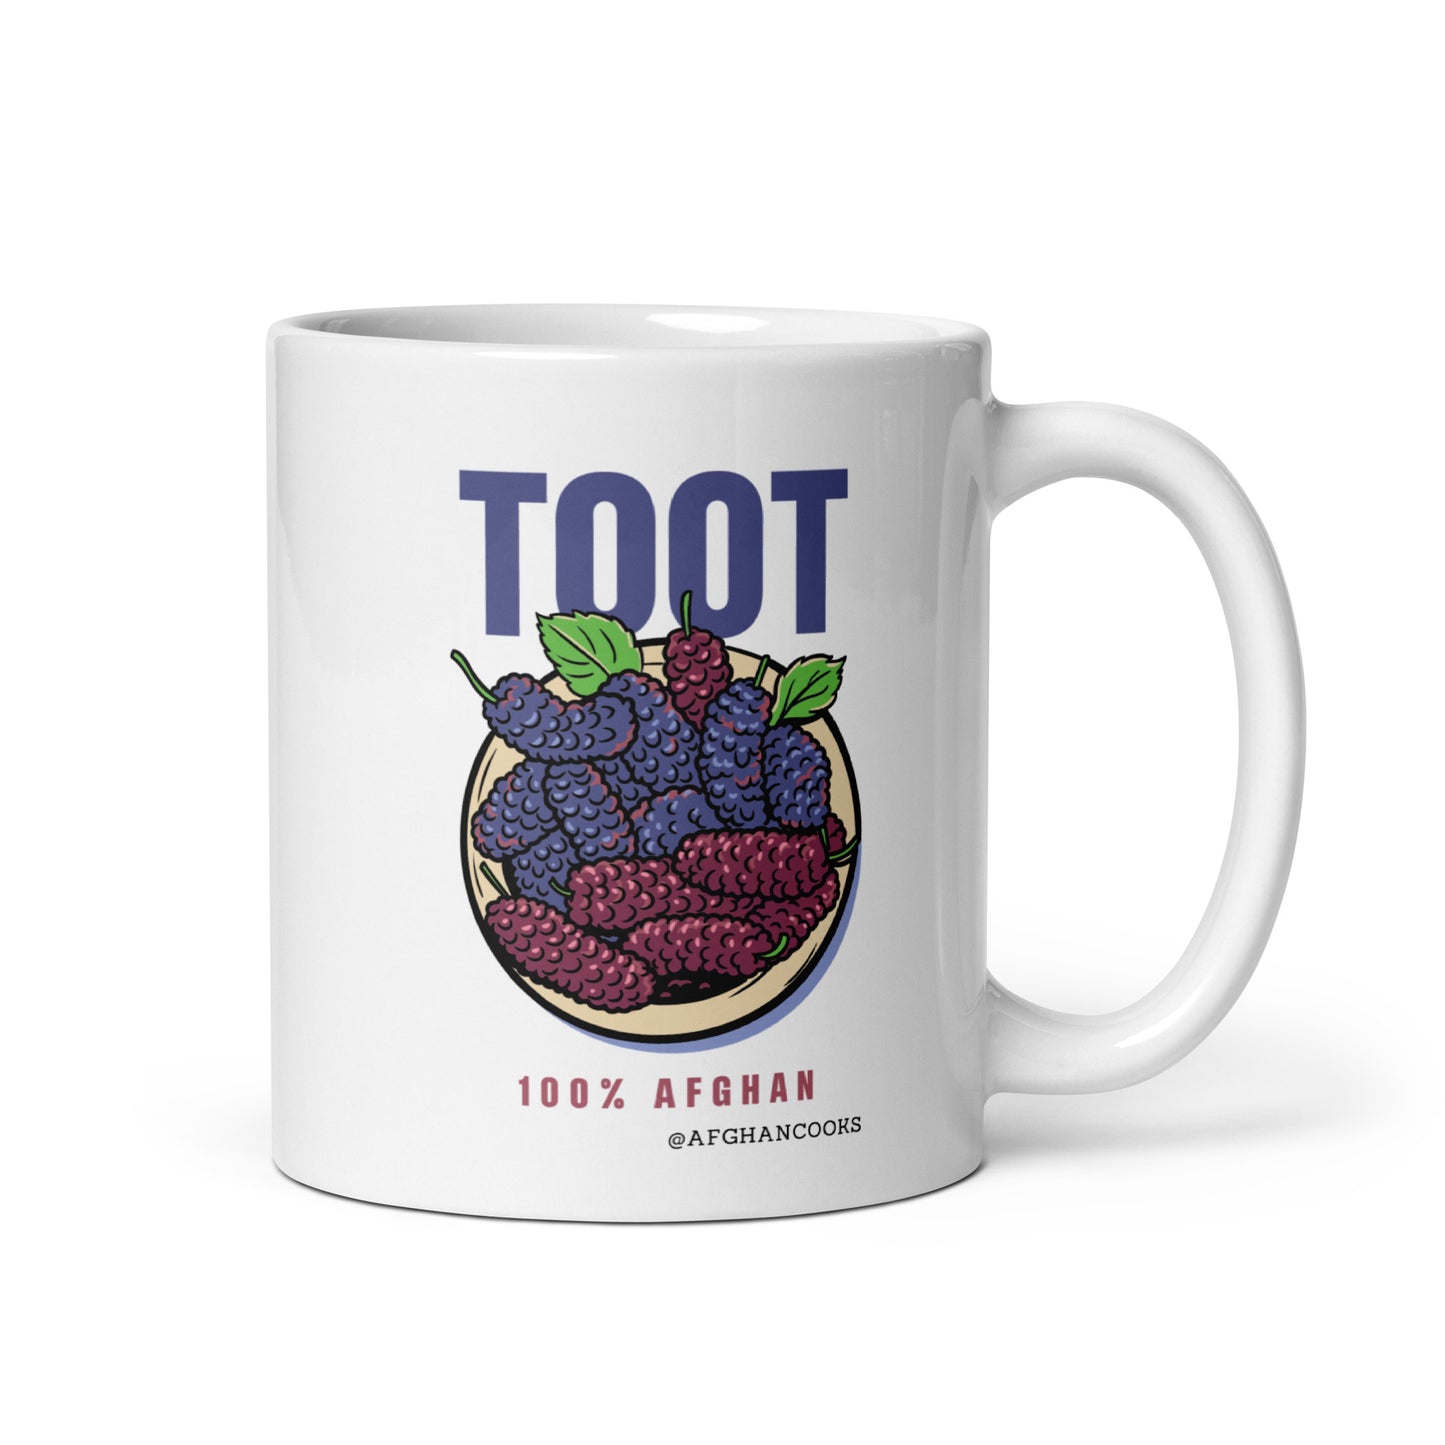 Afghan Mug - Toot